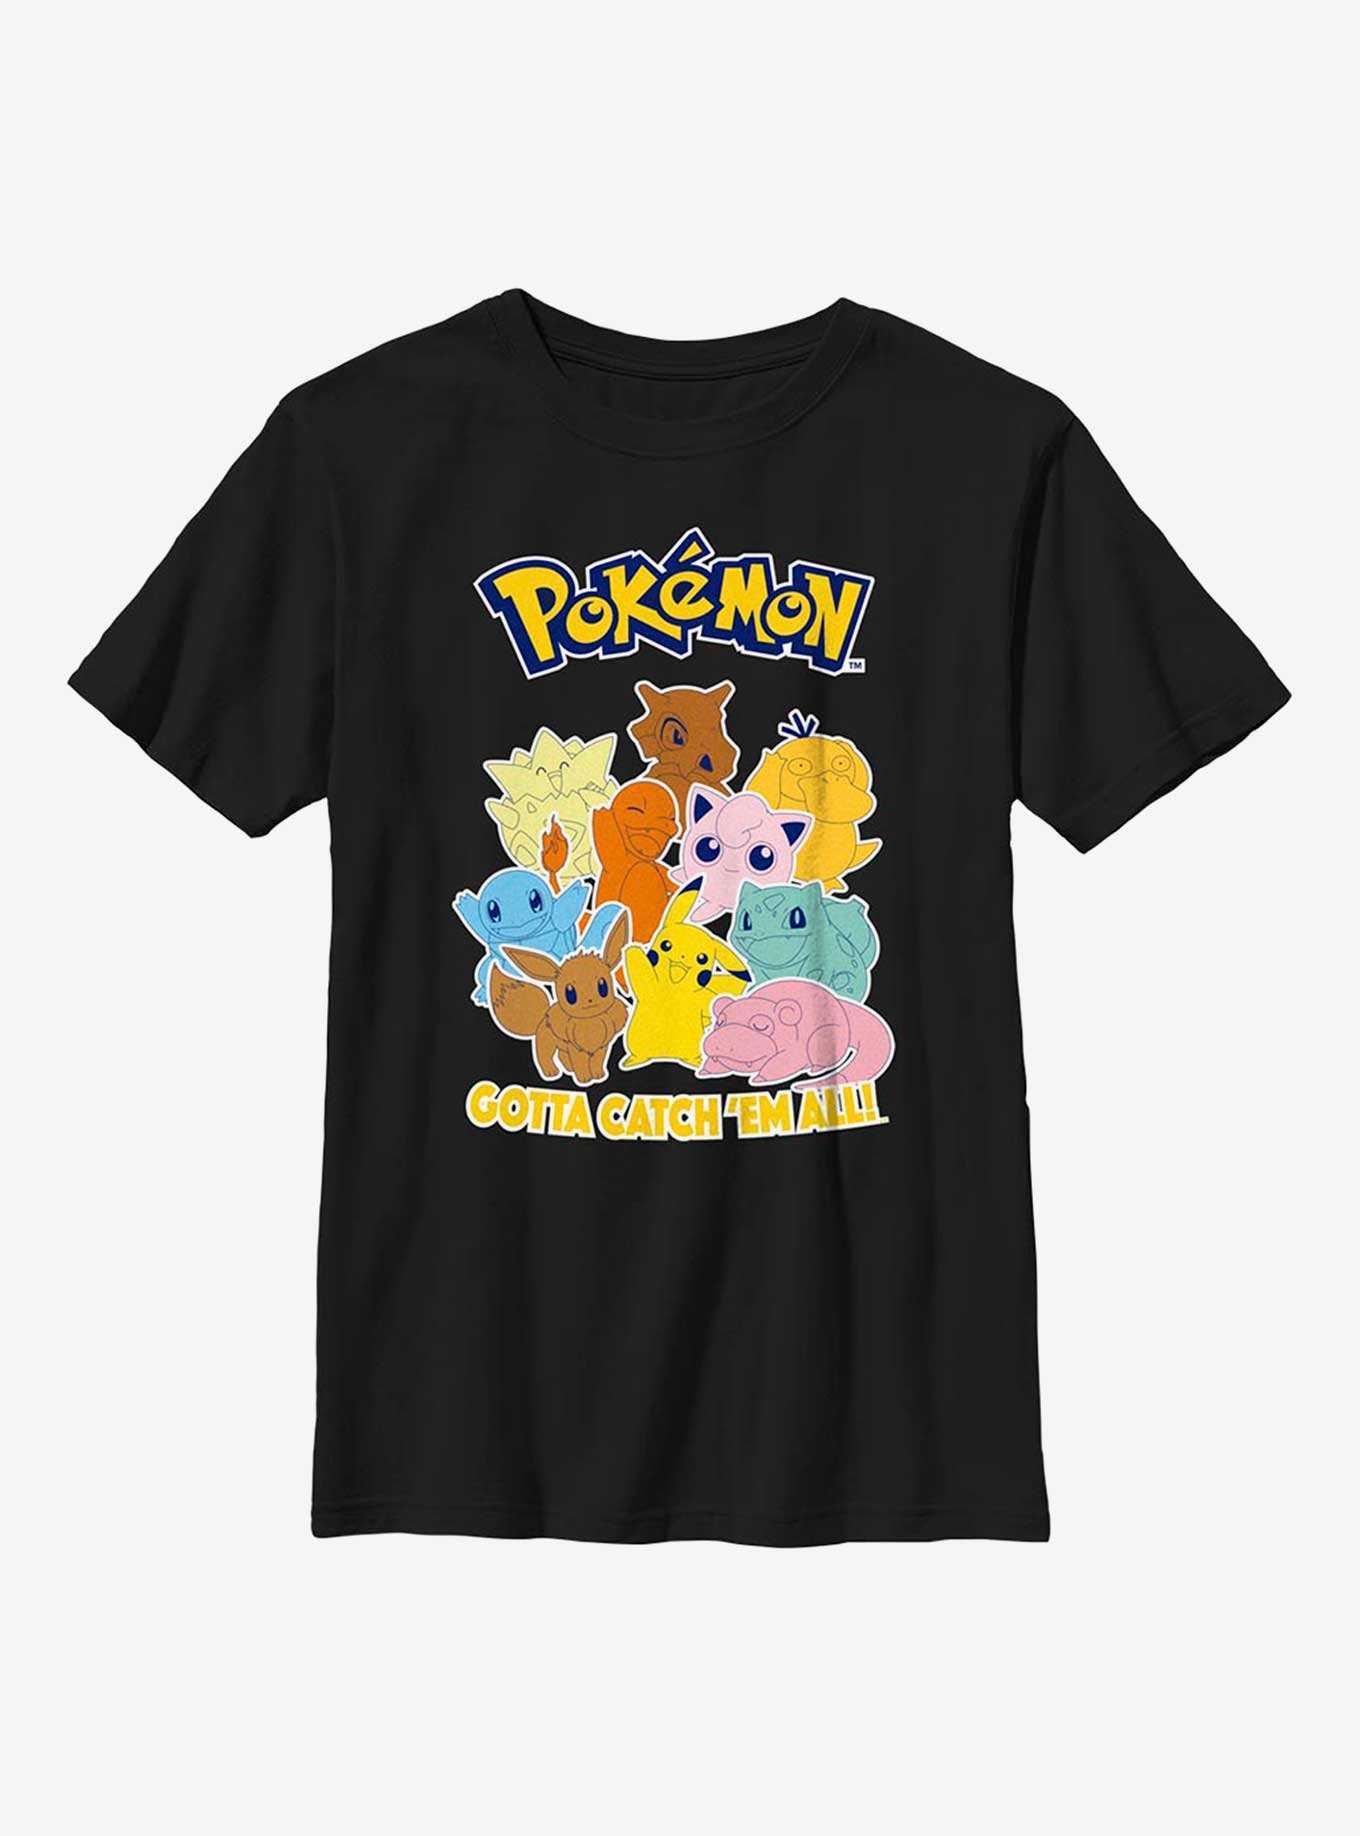 Pokémon Gotta Catch 'Em All! Youth T-Shirt, , hi-res